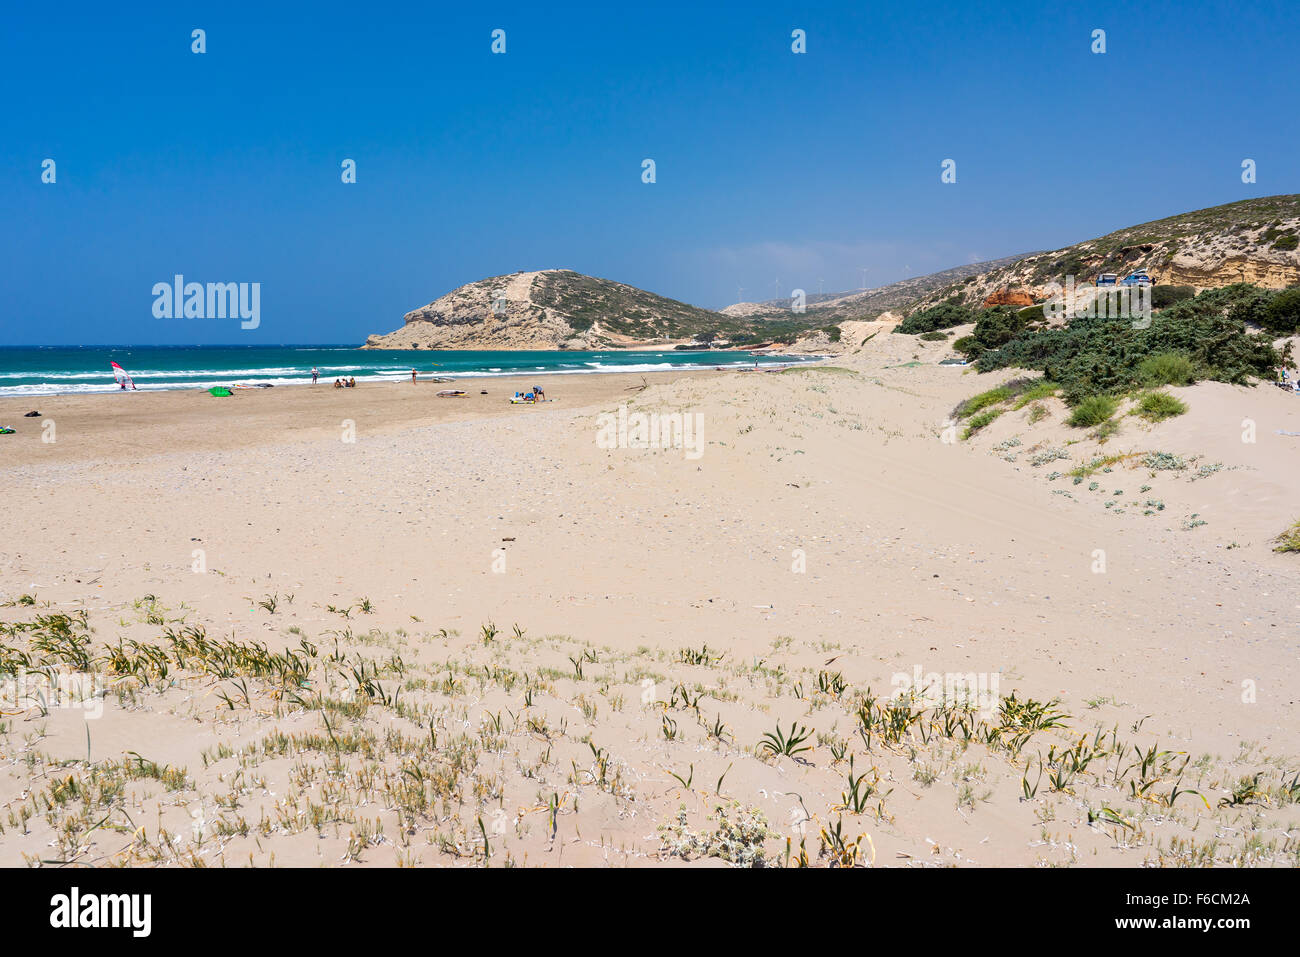 La spiaggia di sabbia dorata a Prasonisi sull' isola di Rodi DODECANNESO Grecia Europa Foto Stock